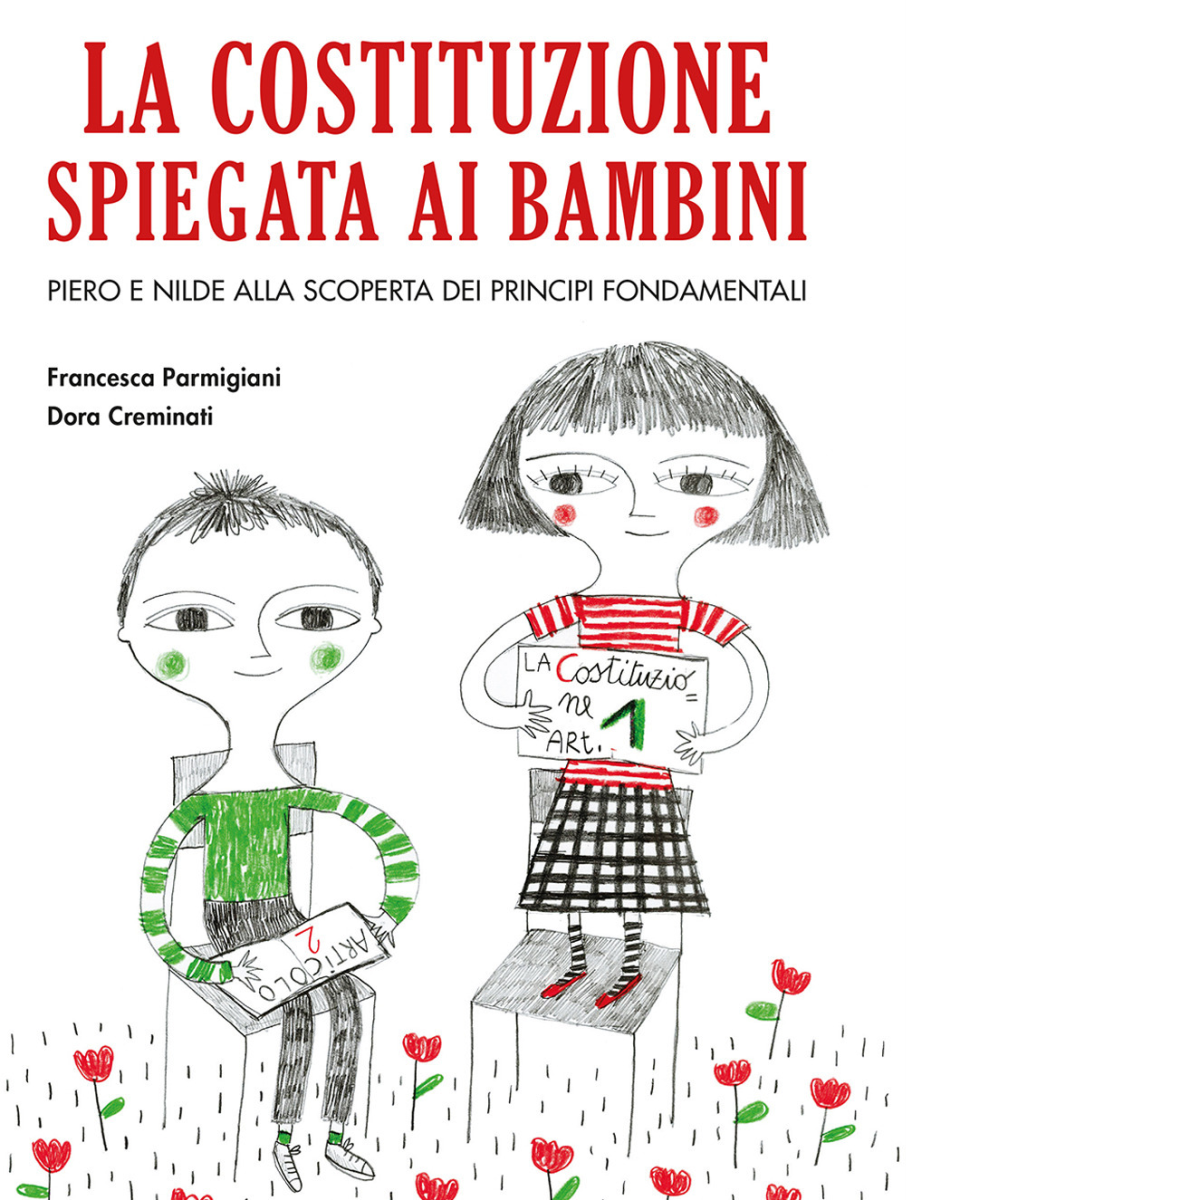 La Costituzione spiegata ai bambini di Francesca Parmigiani, Dora Creminati,  20